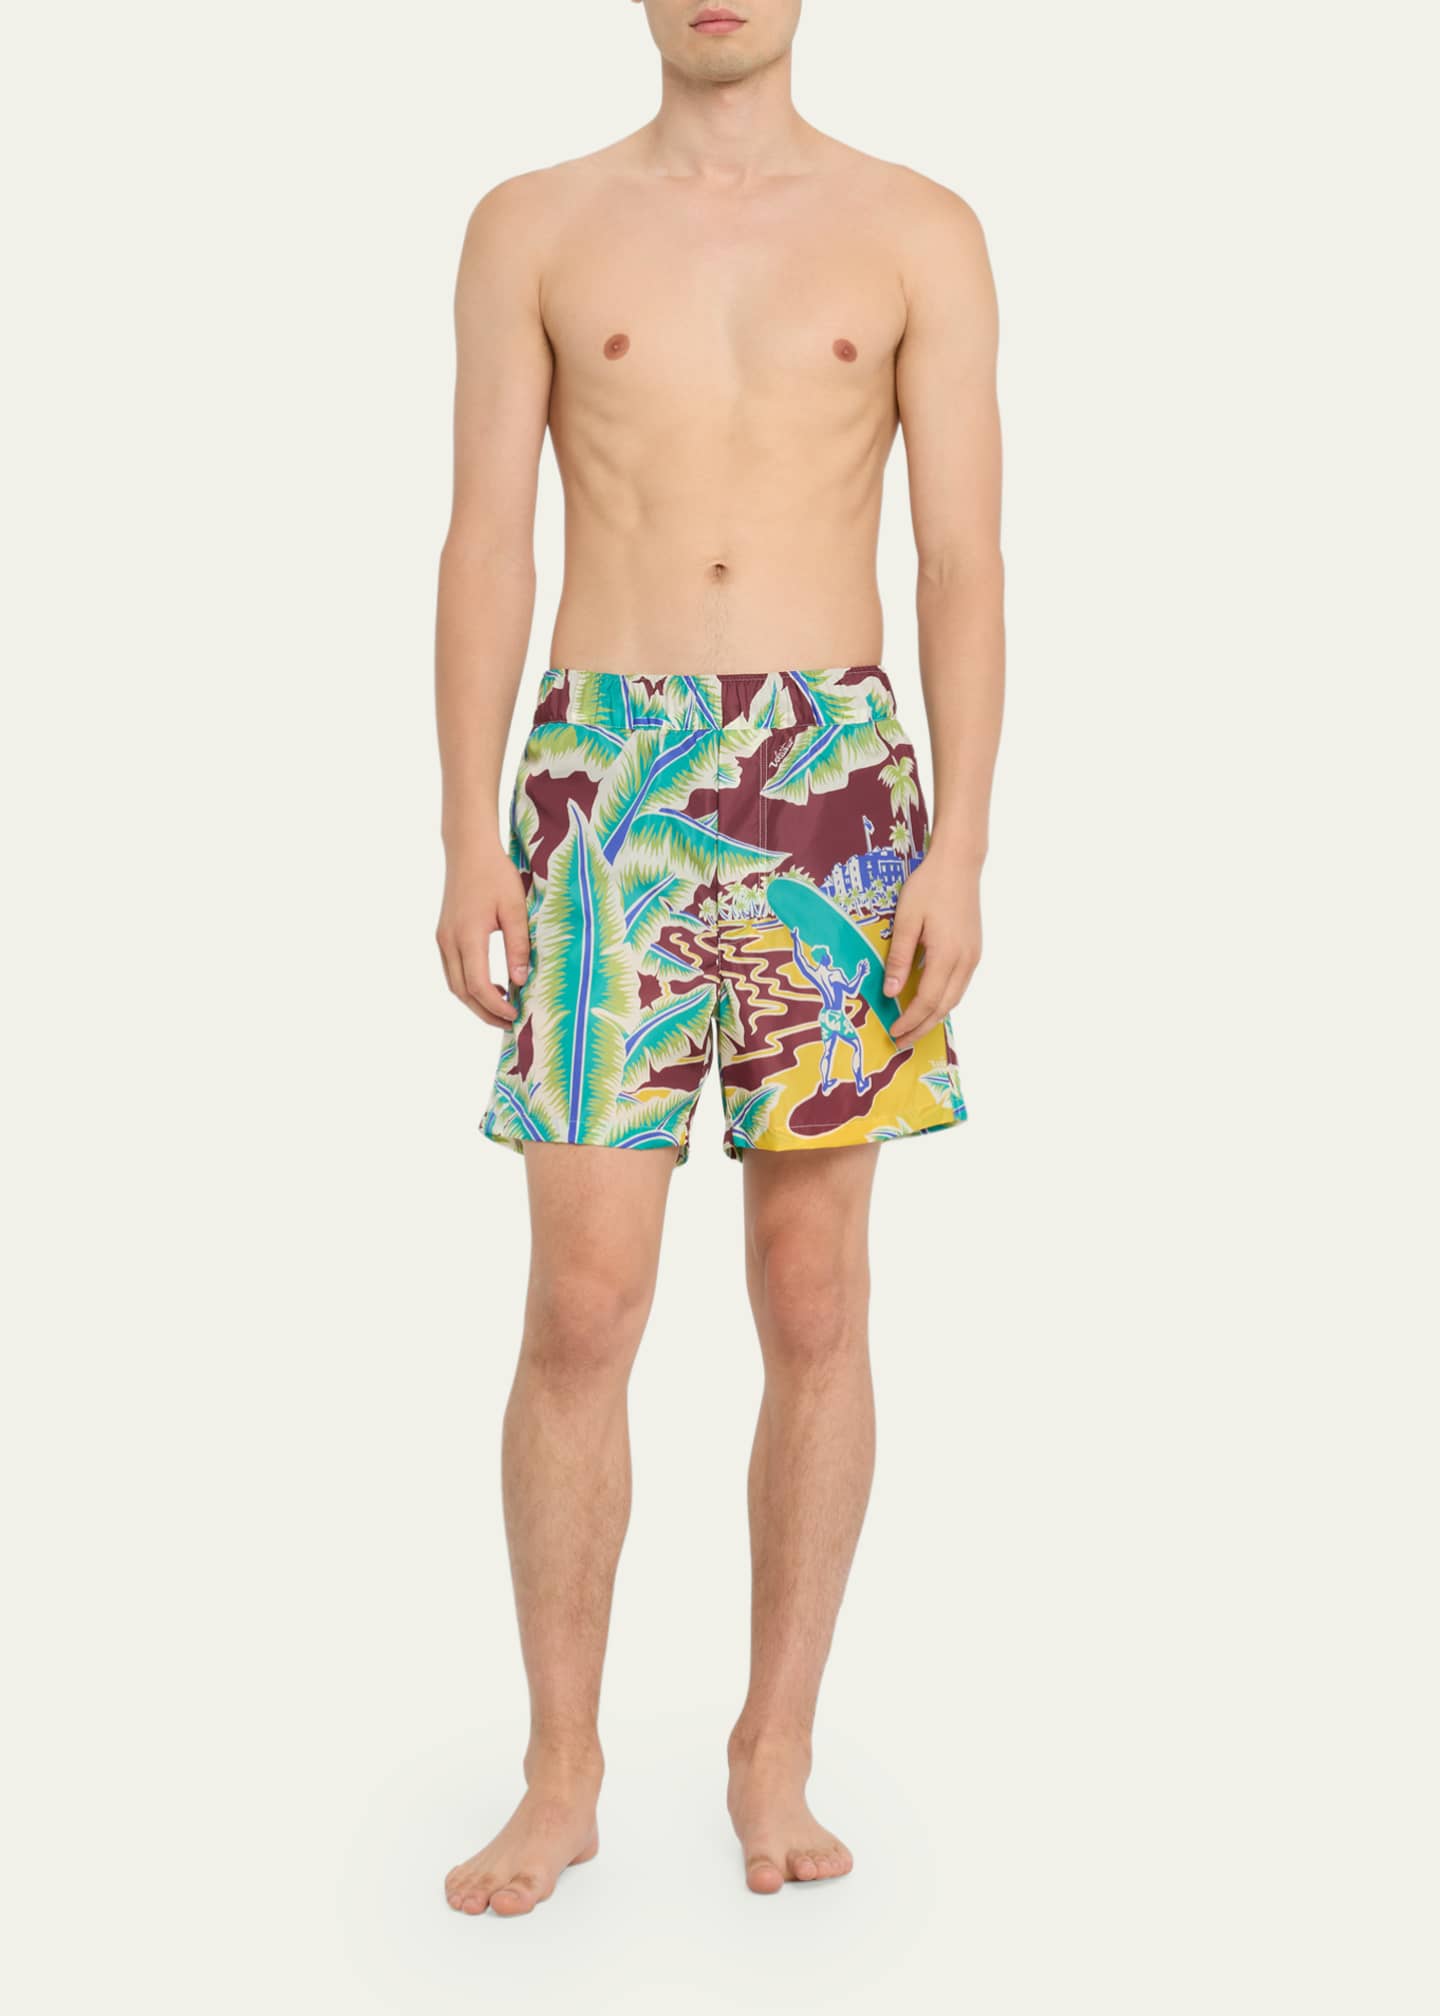 Valentino Garavani Men's Surf-Print Swim Shorts - Bergdorf Goodman